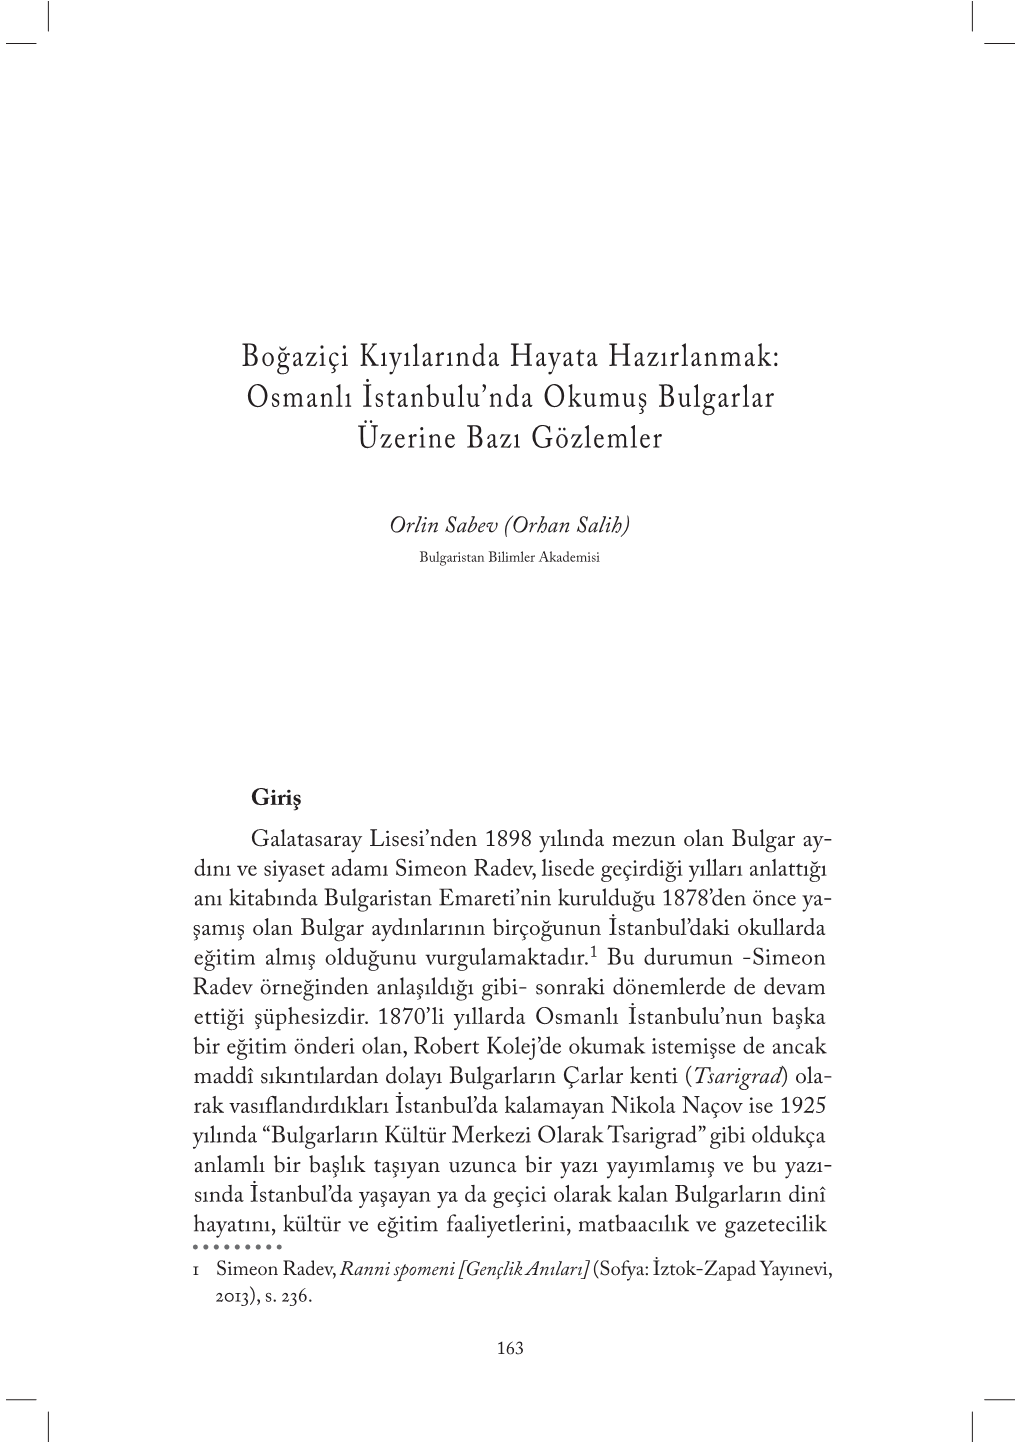 Osmanlı İstanbulu'nda Okumuş Bulgarlar Üzerine Bazı Gözlemler